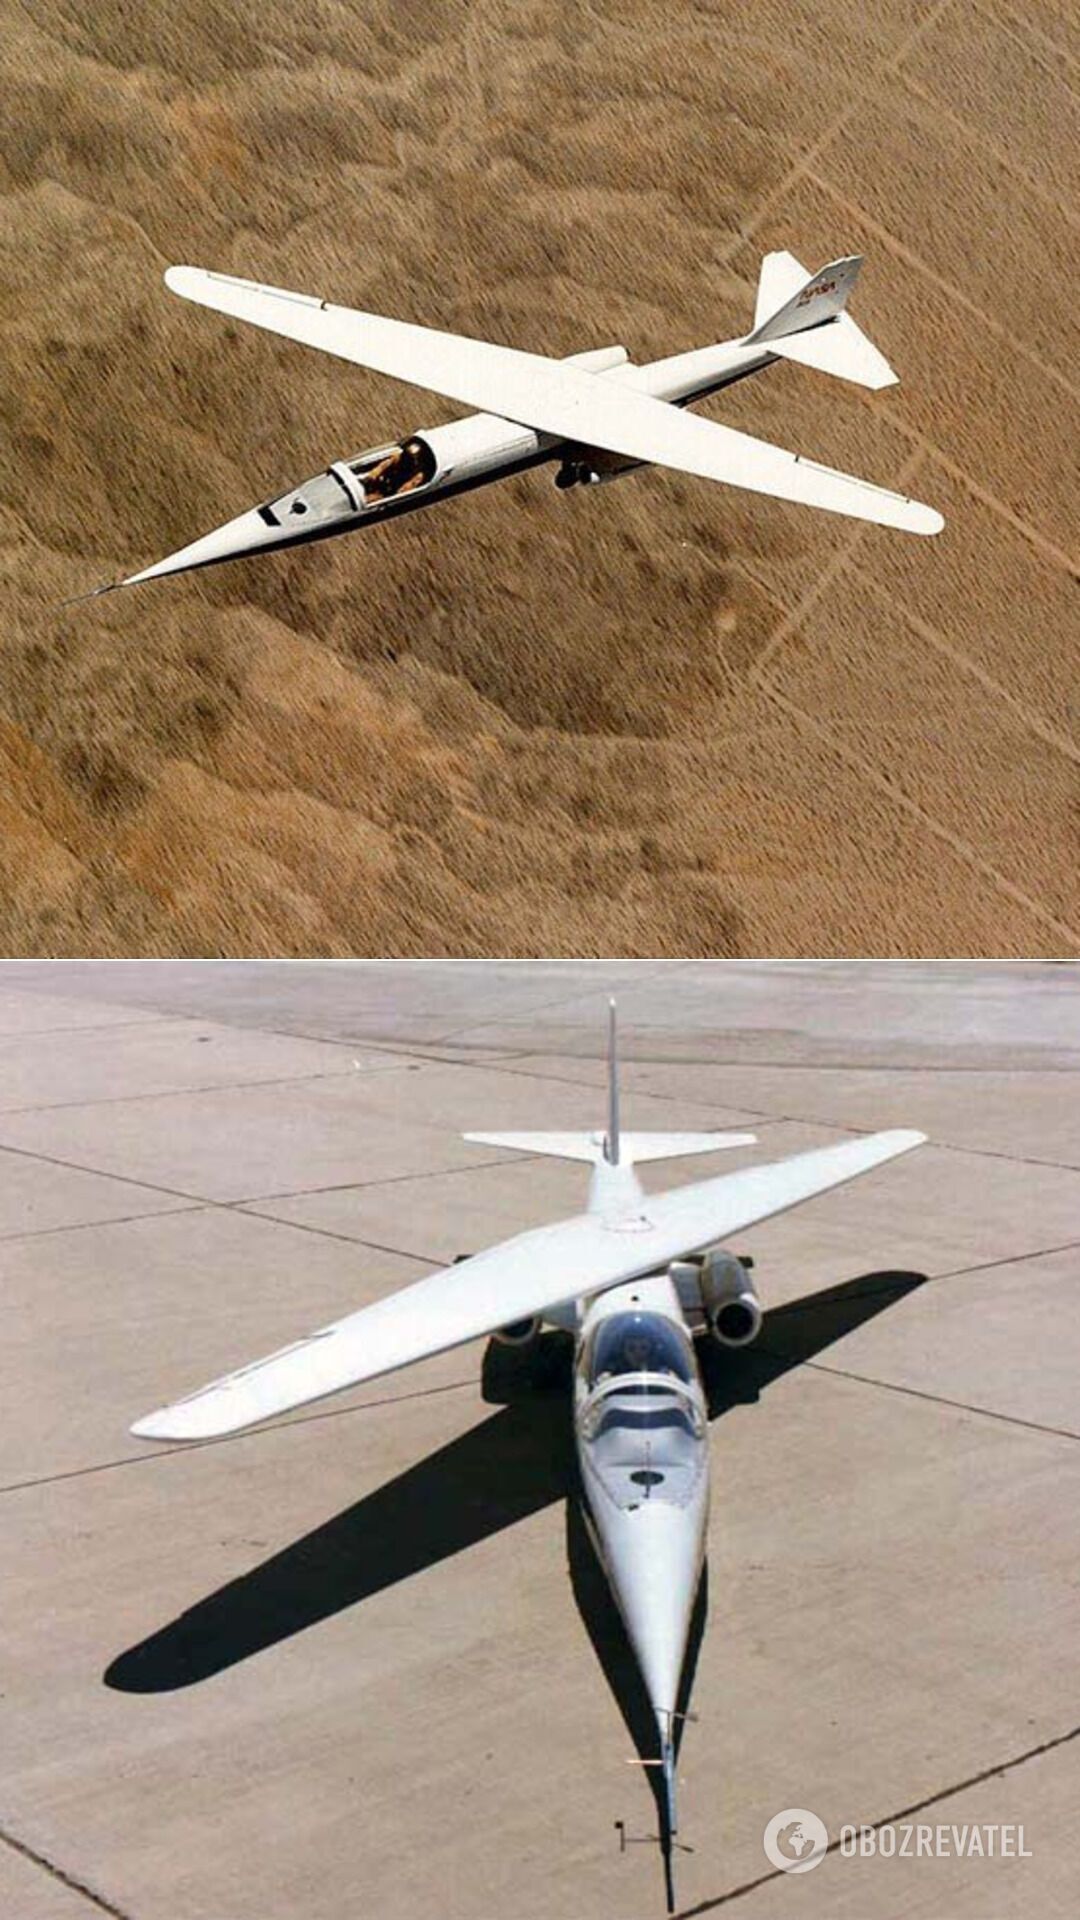 Ames AD-1 ( "Еймес АД-1") – експериментальний і перший в світі літак з косим крилом. Був побудований NASA в 1979 році і зробив перший політ 29 грудня того ж року. Випробування проводилися до початку 1982 року. За цей час AD-1 освоїли 17 льотчиків. Після закриття програми літак помістили в музей міста Сан-Карлос, де він знаходиться до цих пір